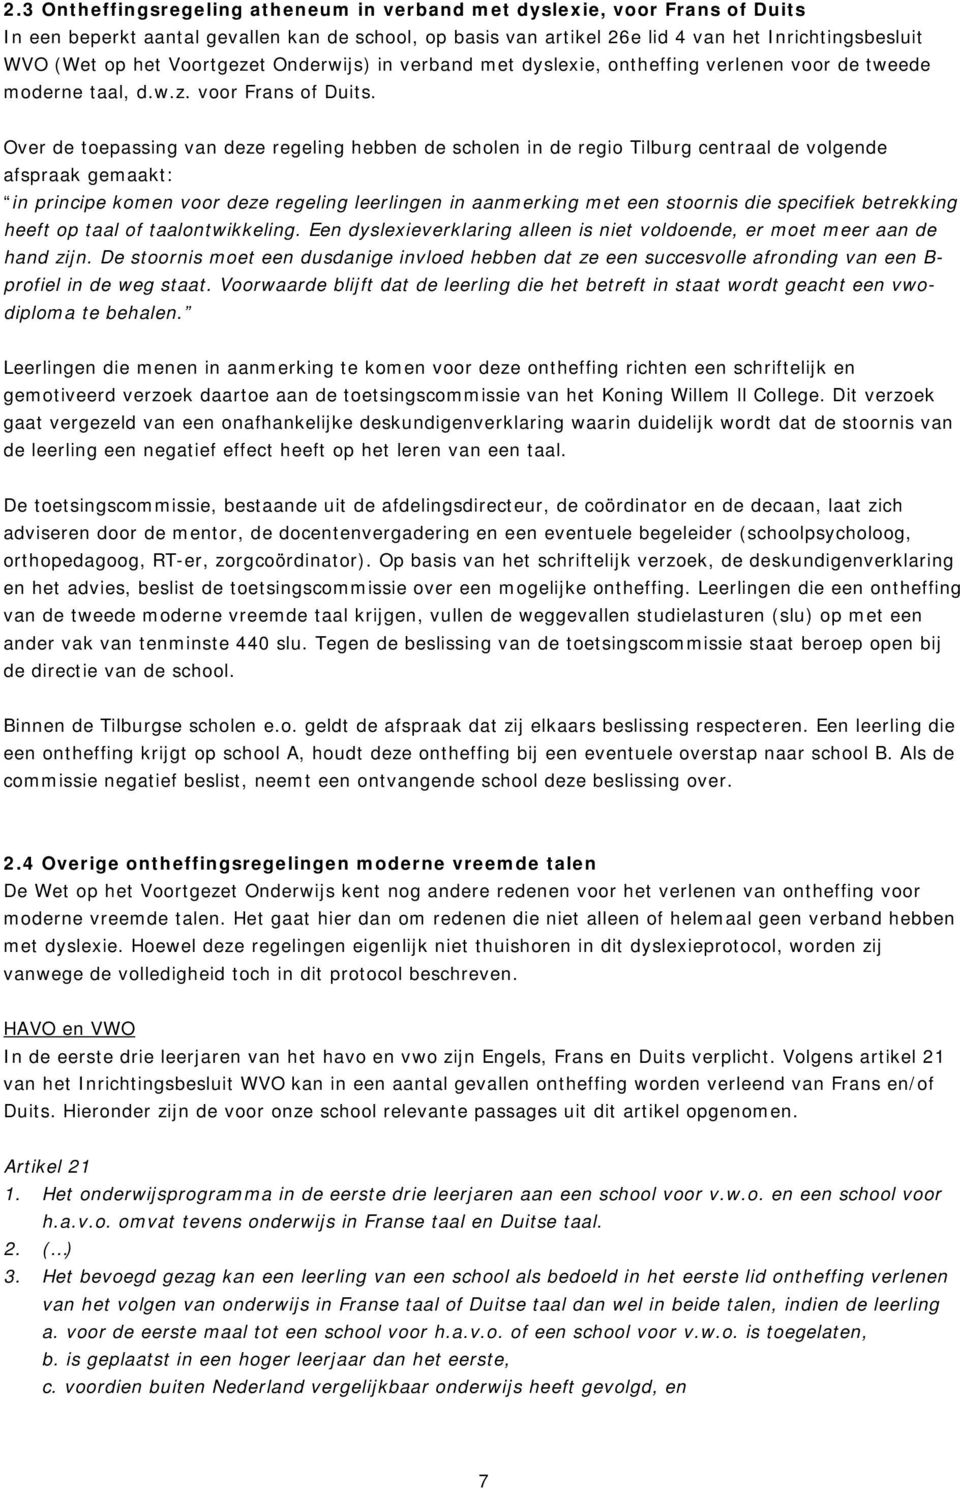 Over de toepassing van deze regeling hebben de scholen in de regio Tilburg centraal de volgende afspraak gemaakt: in principe komen voor deze regeling leerlingen in aanmerking met een stoornis die